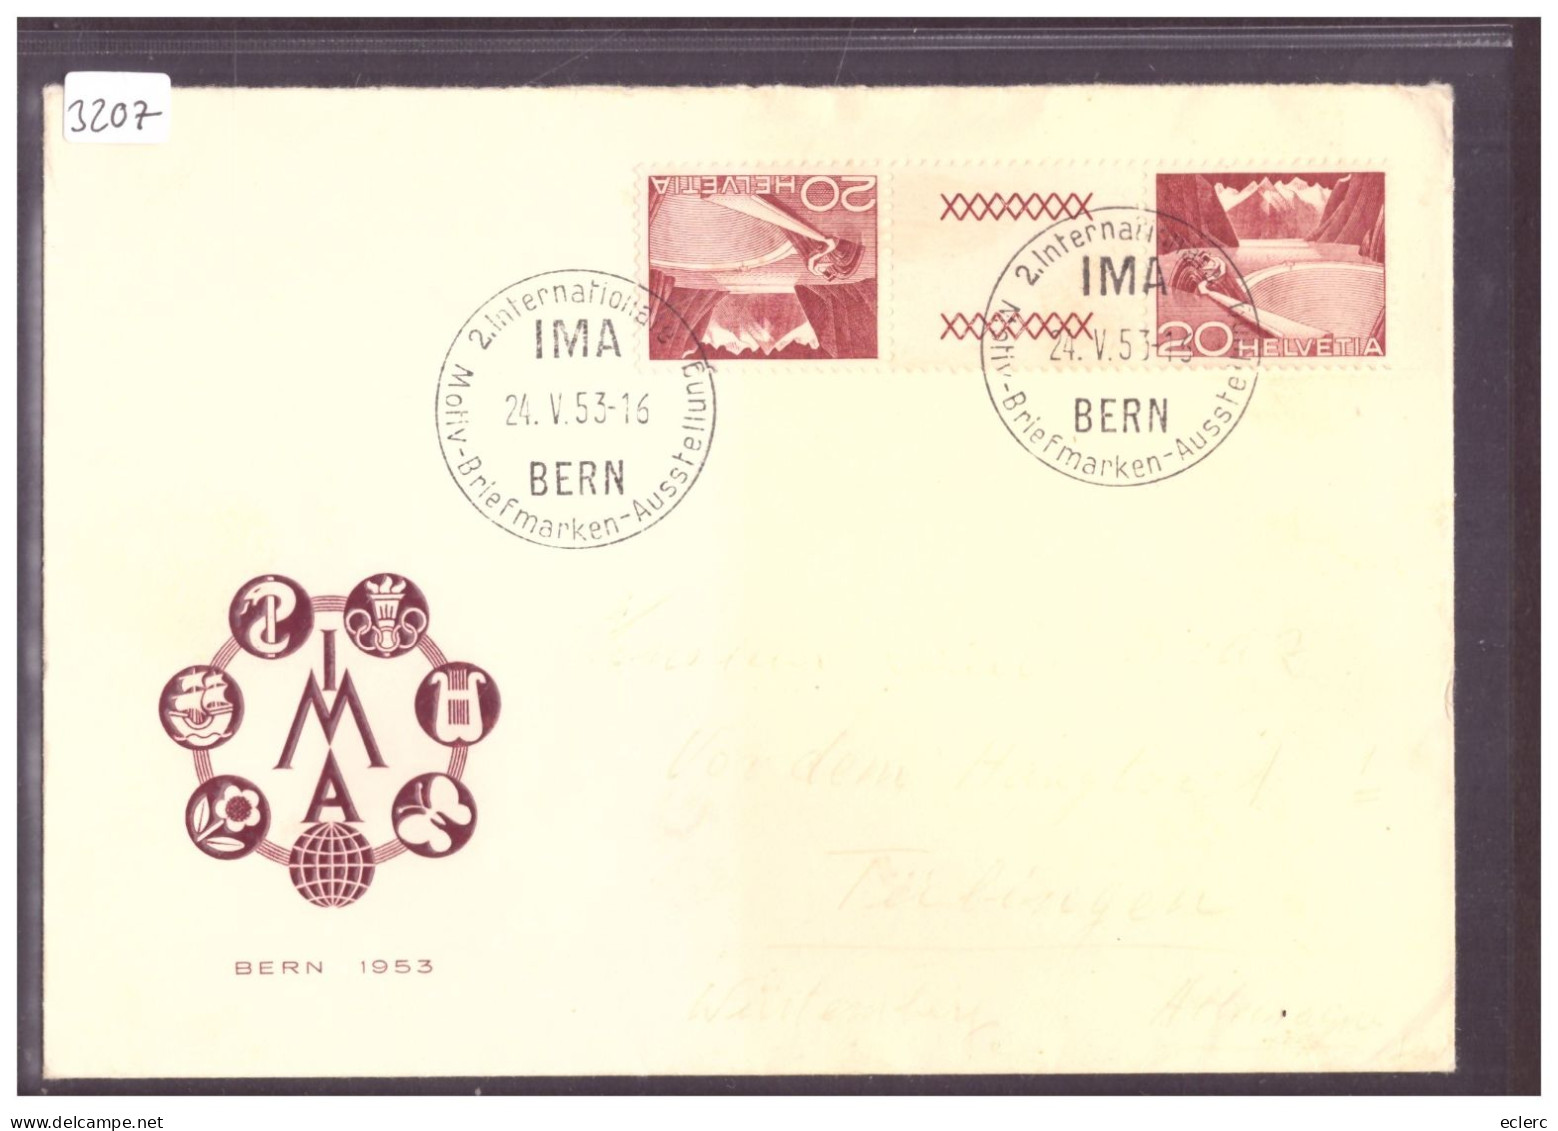 IMA BERN 1953 - MOTIV BRIEFMARKEN AUSSTELLUNG - Briefe U. Dokumente